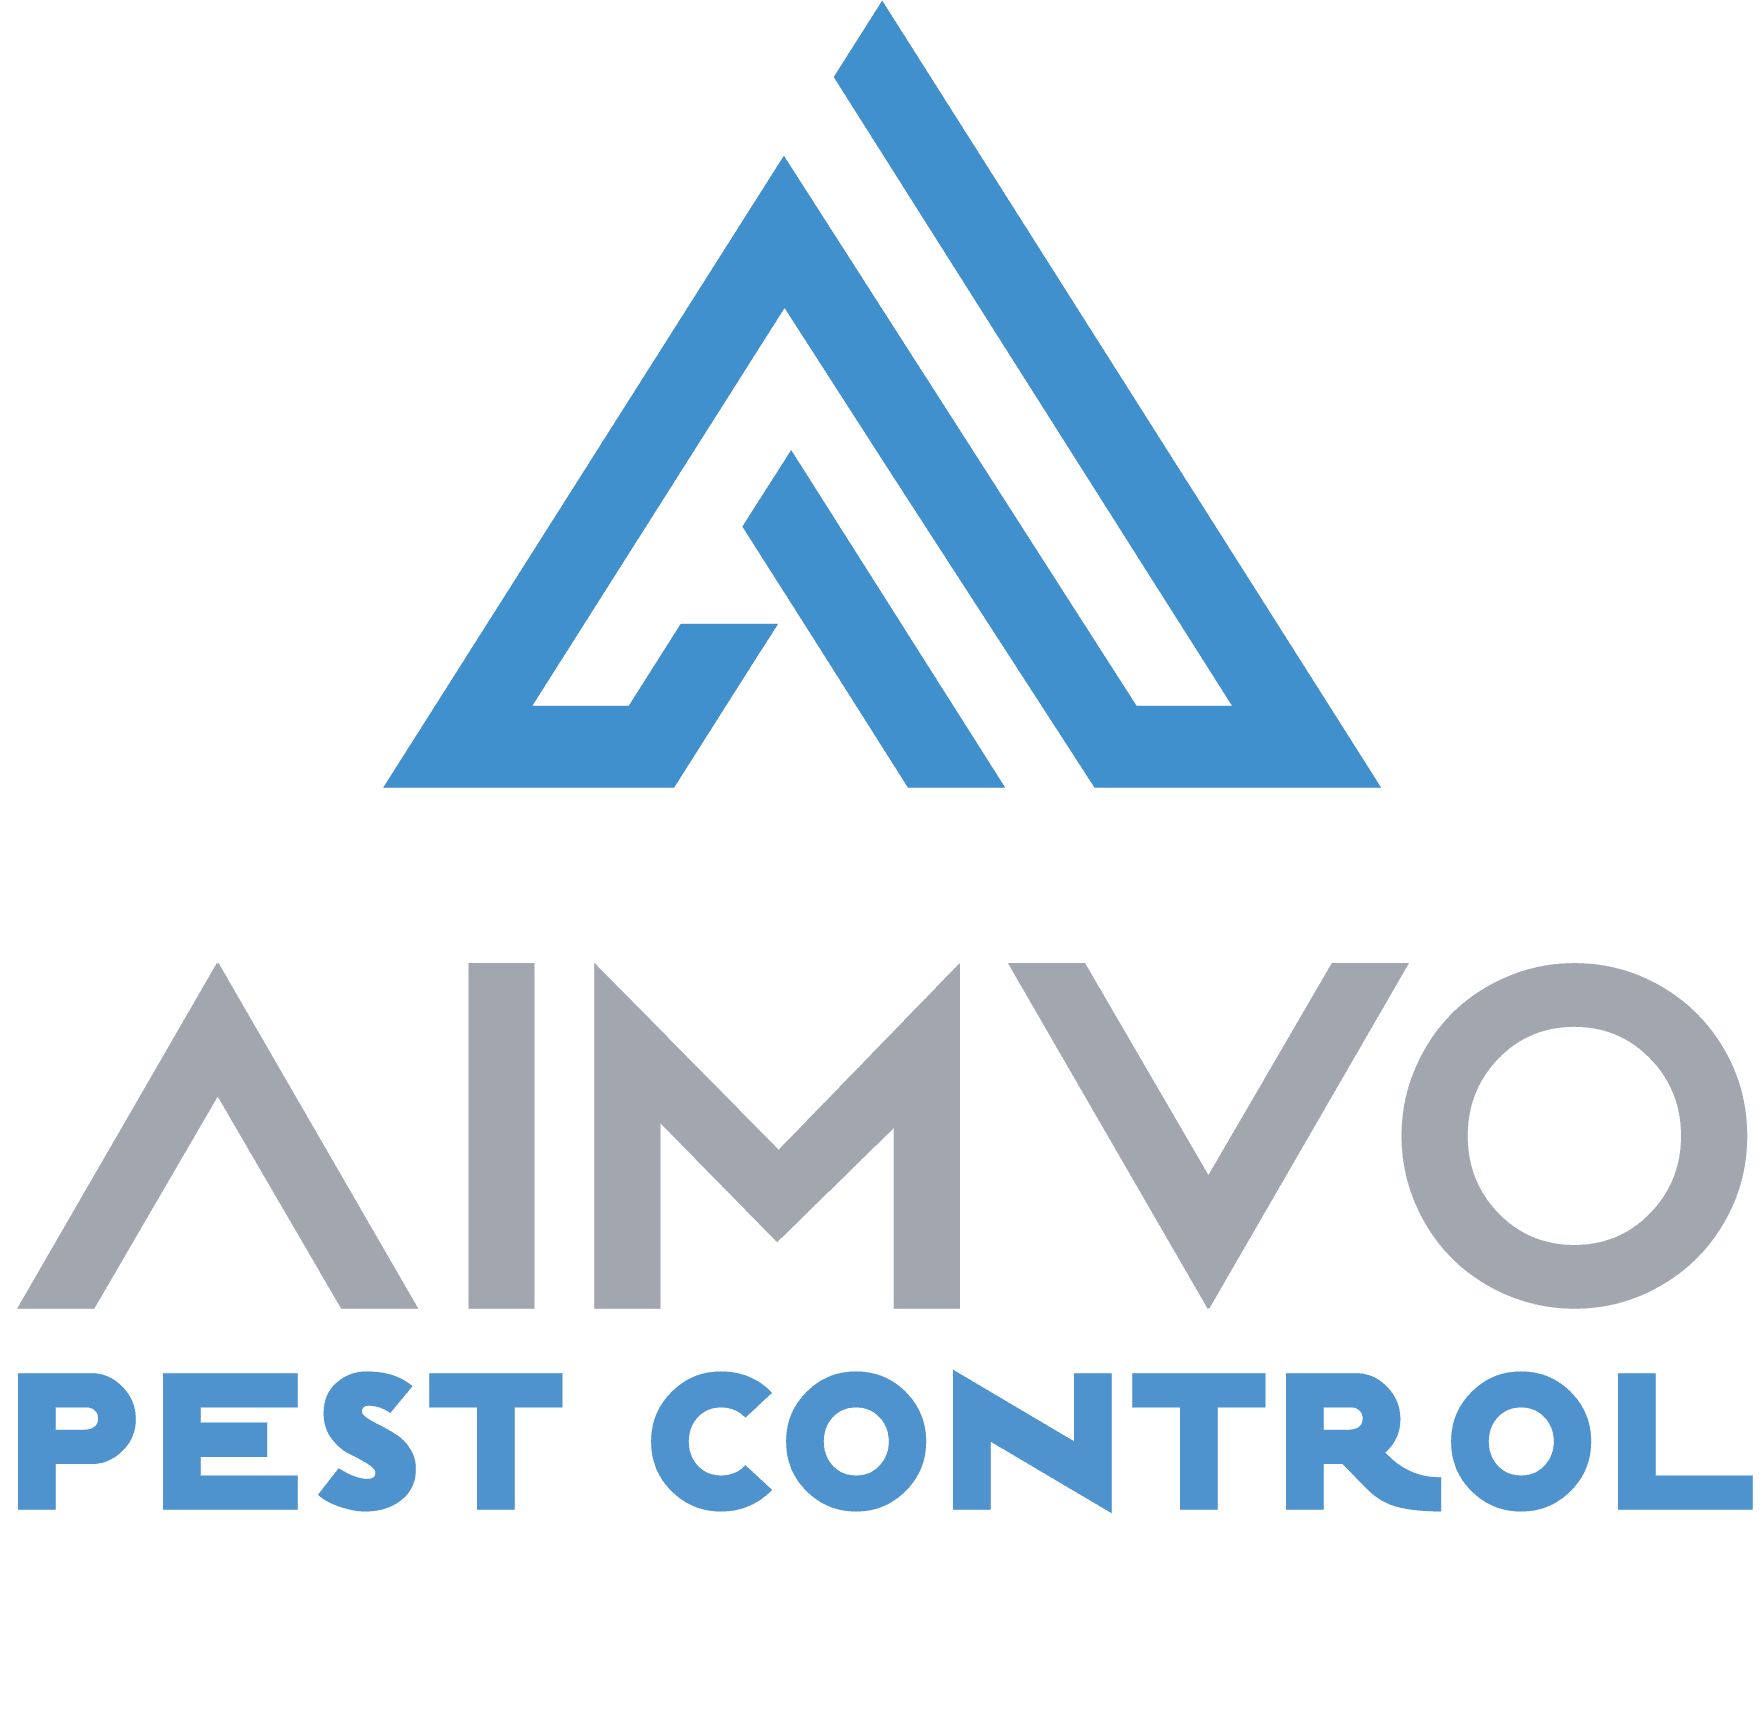 AIMVO PEST CONTROL LOGO